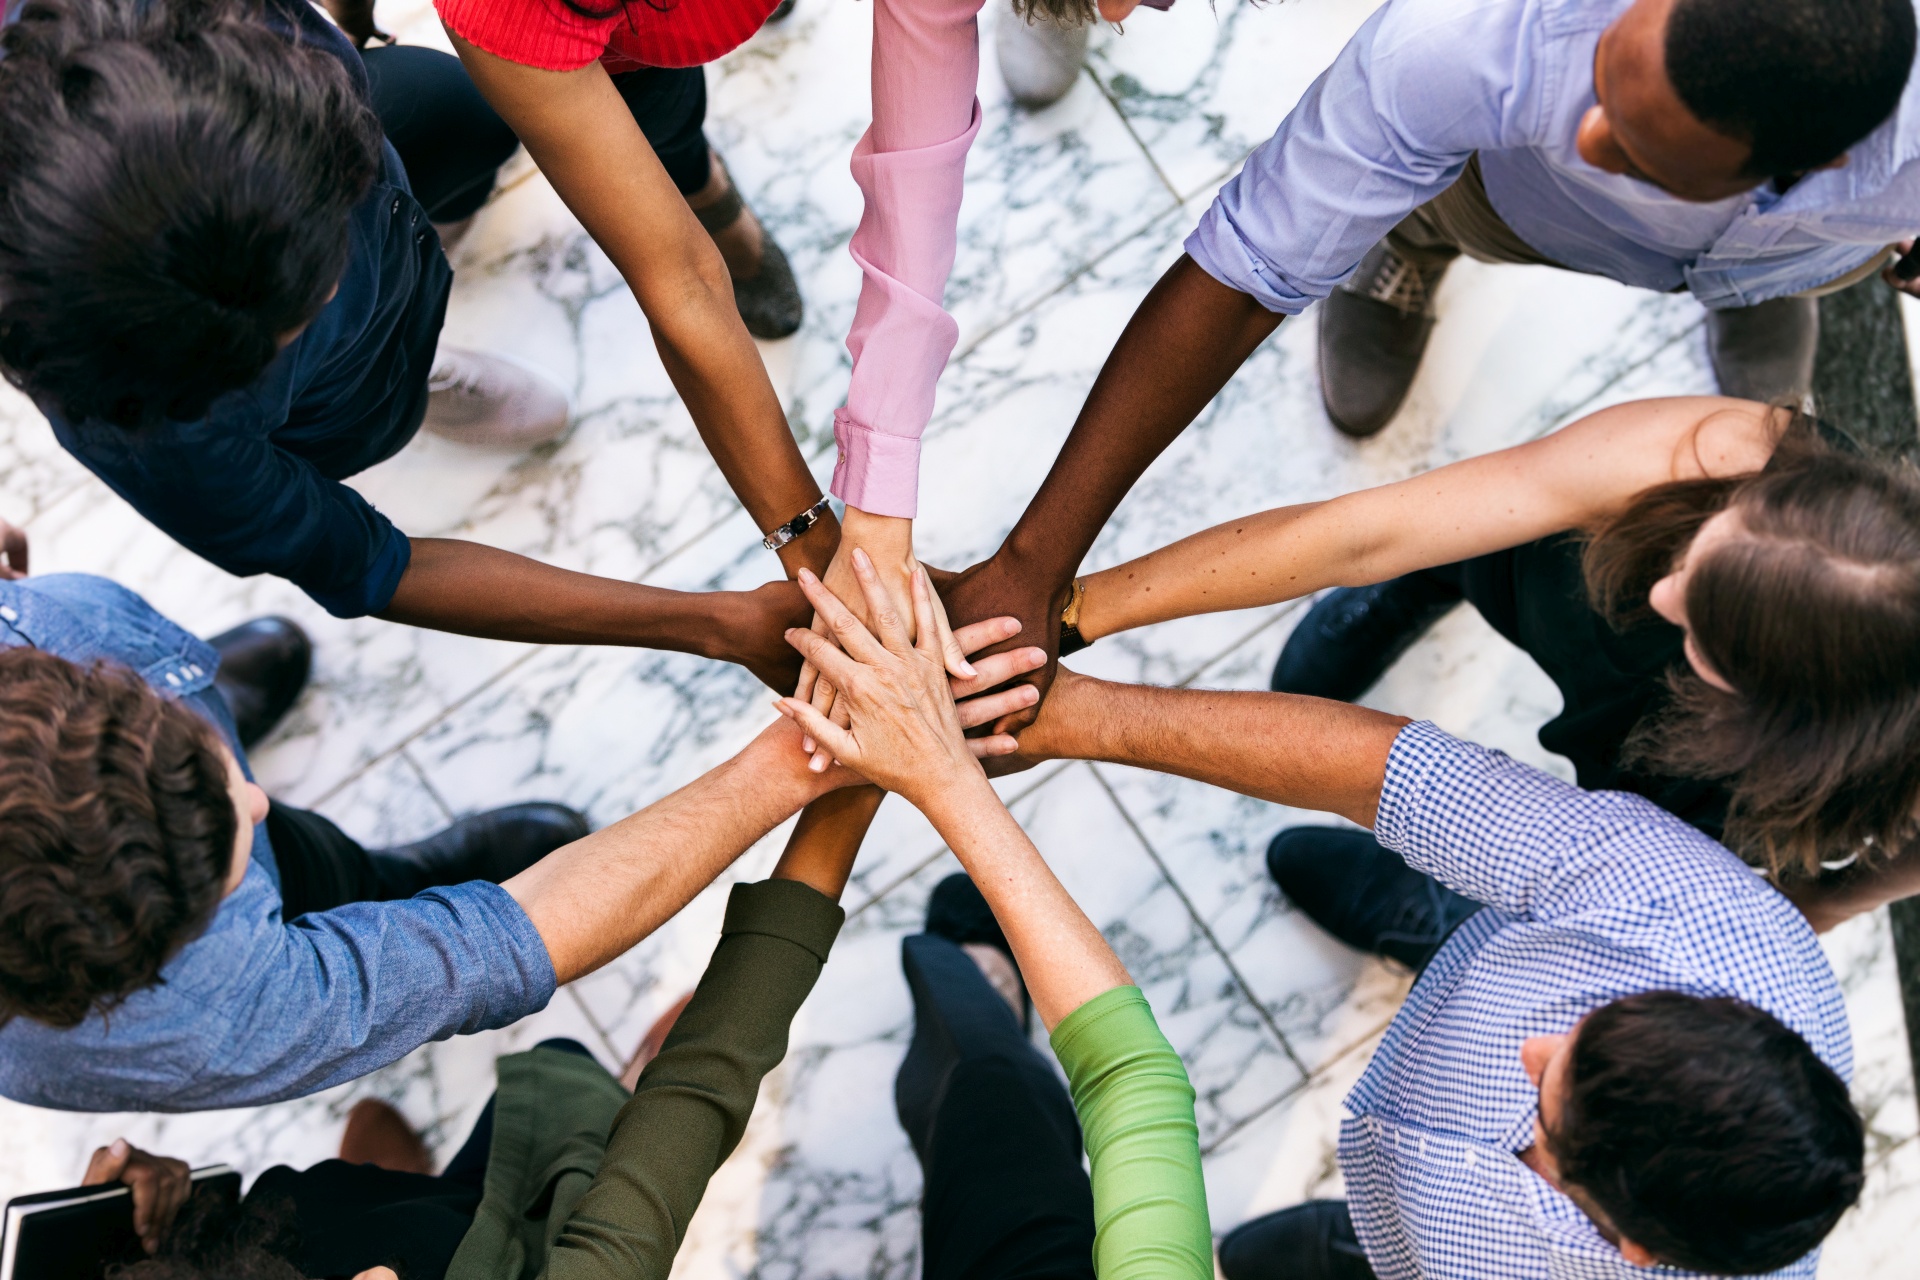 Eine Gruppe von jungen Erwachsenen, die unterschiedlicher ethnischer Herkunft sind und gemeinsam in einem geschlossenen Kreis stehen, in dessen Mitte sich die Hände der Personen berühren.